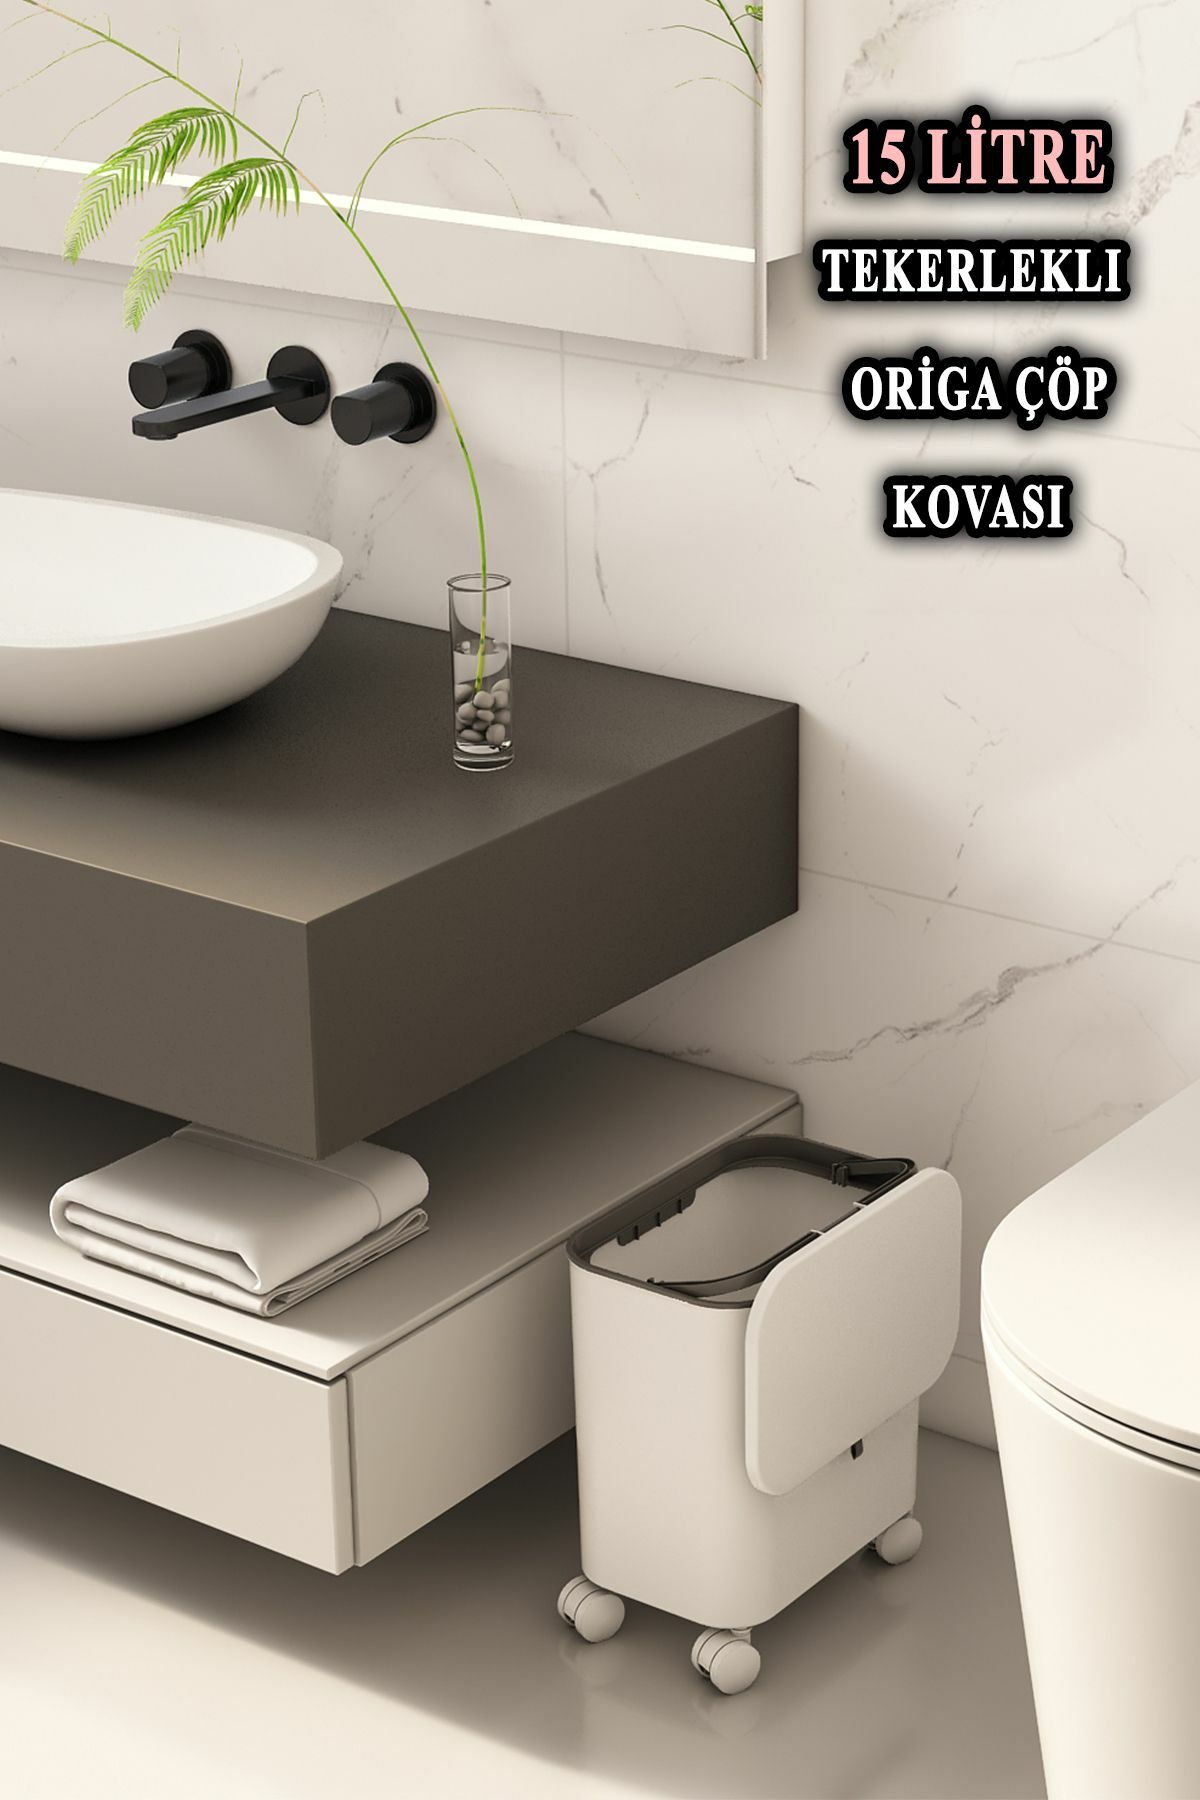 Origa Tekerlekli Fonksiyonel Kapaklı Banyo Ve Mutfak Çöp Kovası Beyaz